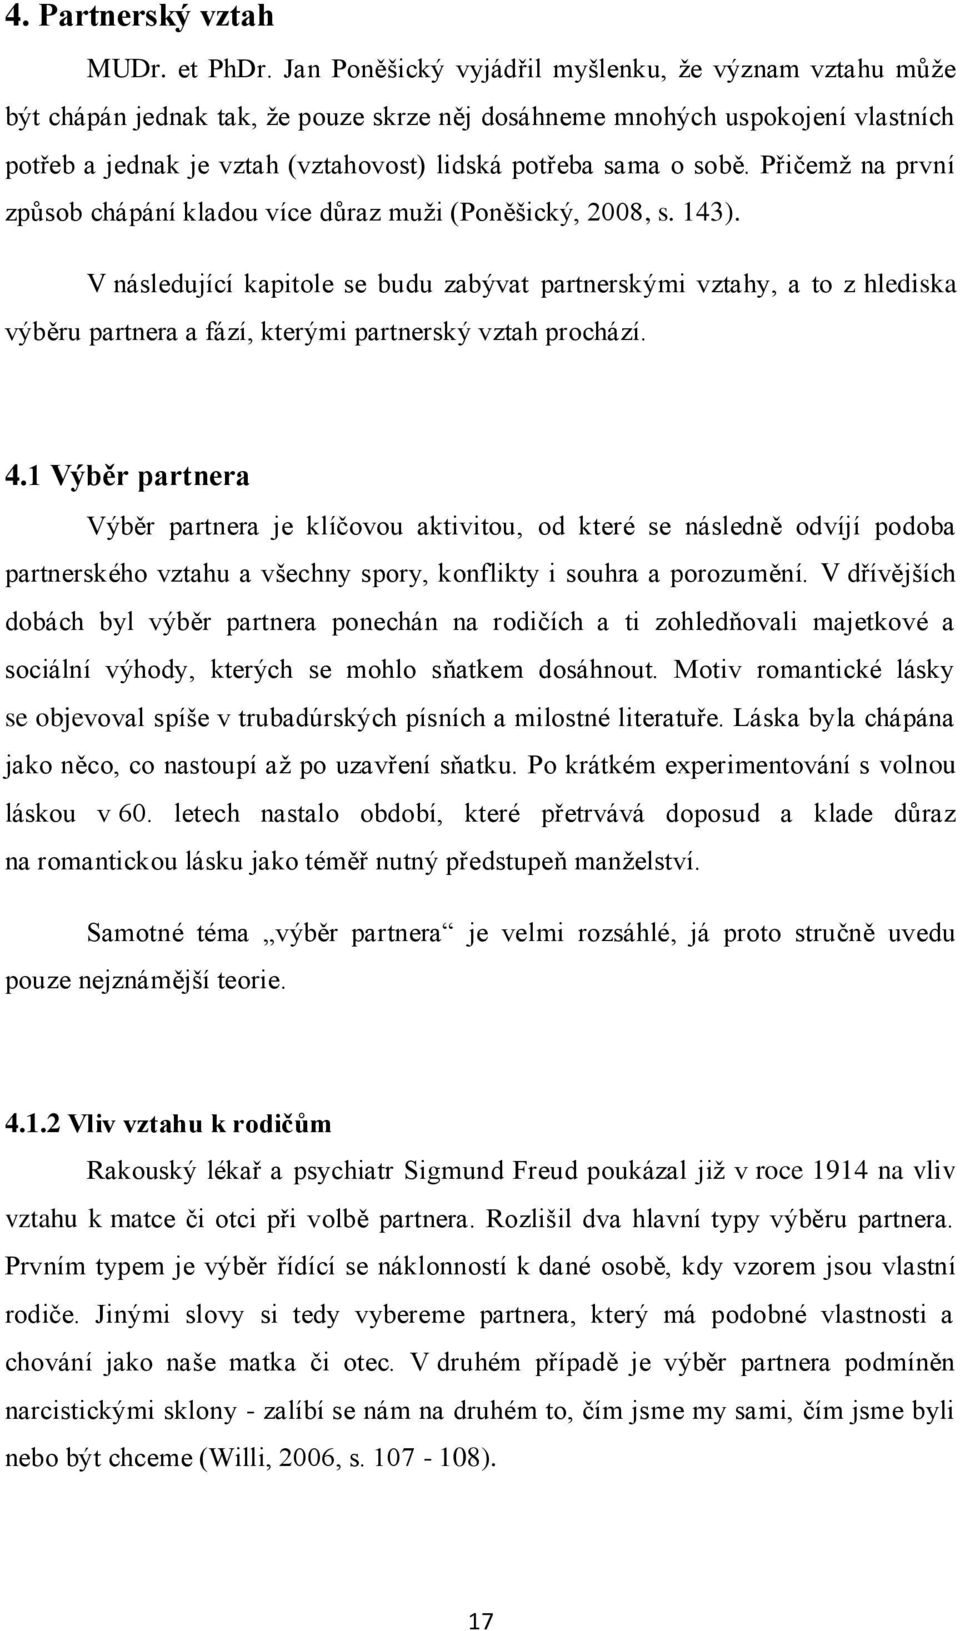 sobě. Přičemţ na první způsob chápání kladou více důraz muţi (Poněšický, 2008, s. 143).